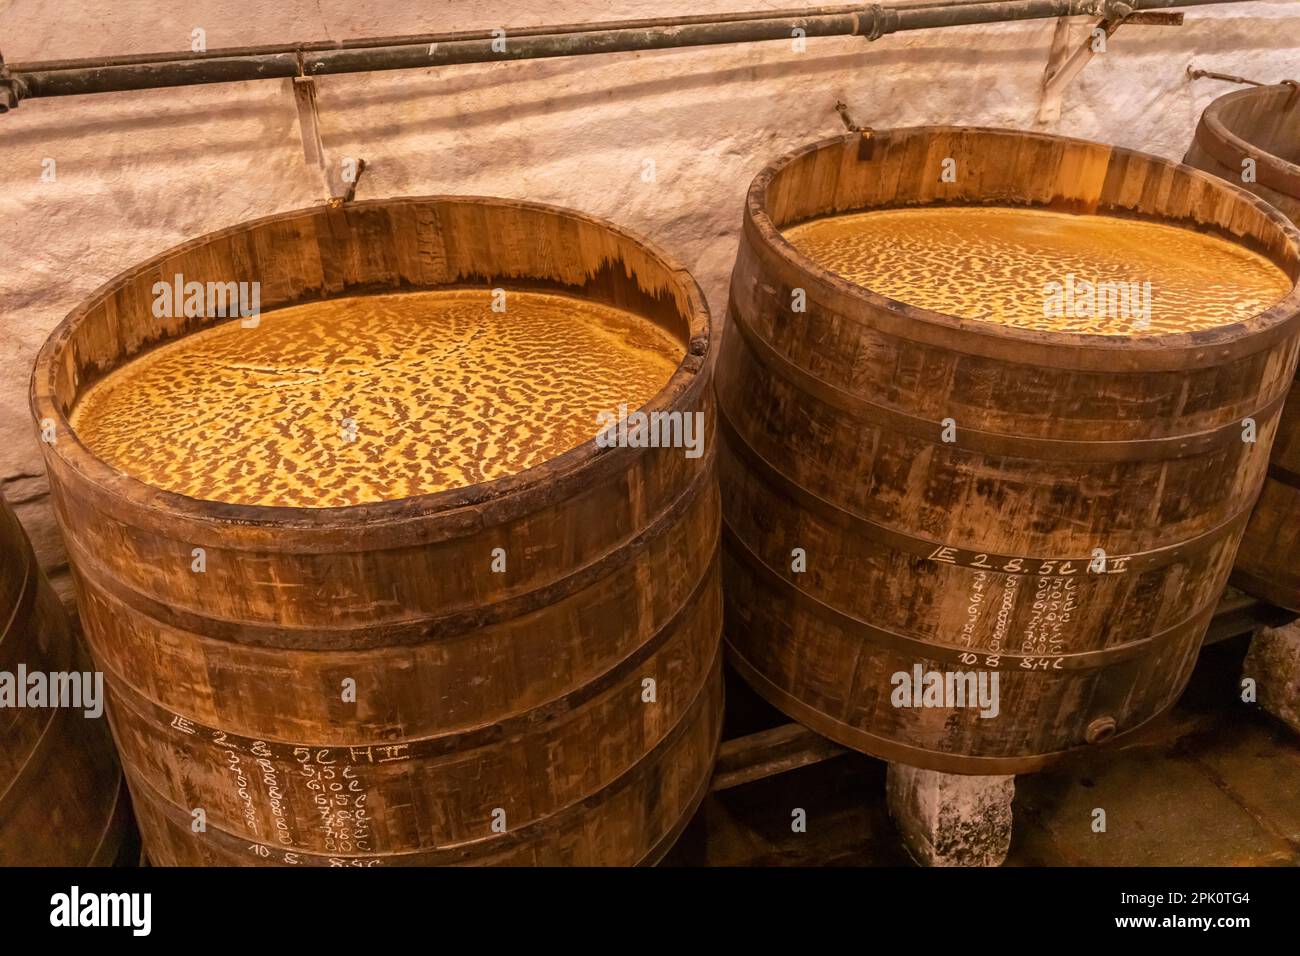 PILSEN, REPUBBLICA CECA, EUROPA - Birreria Pilsner Urquell. Tini storici, vecchie botti. Birra, fermentazione aperta in botti di legno. Foto Stock